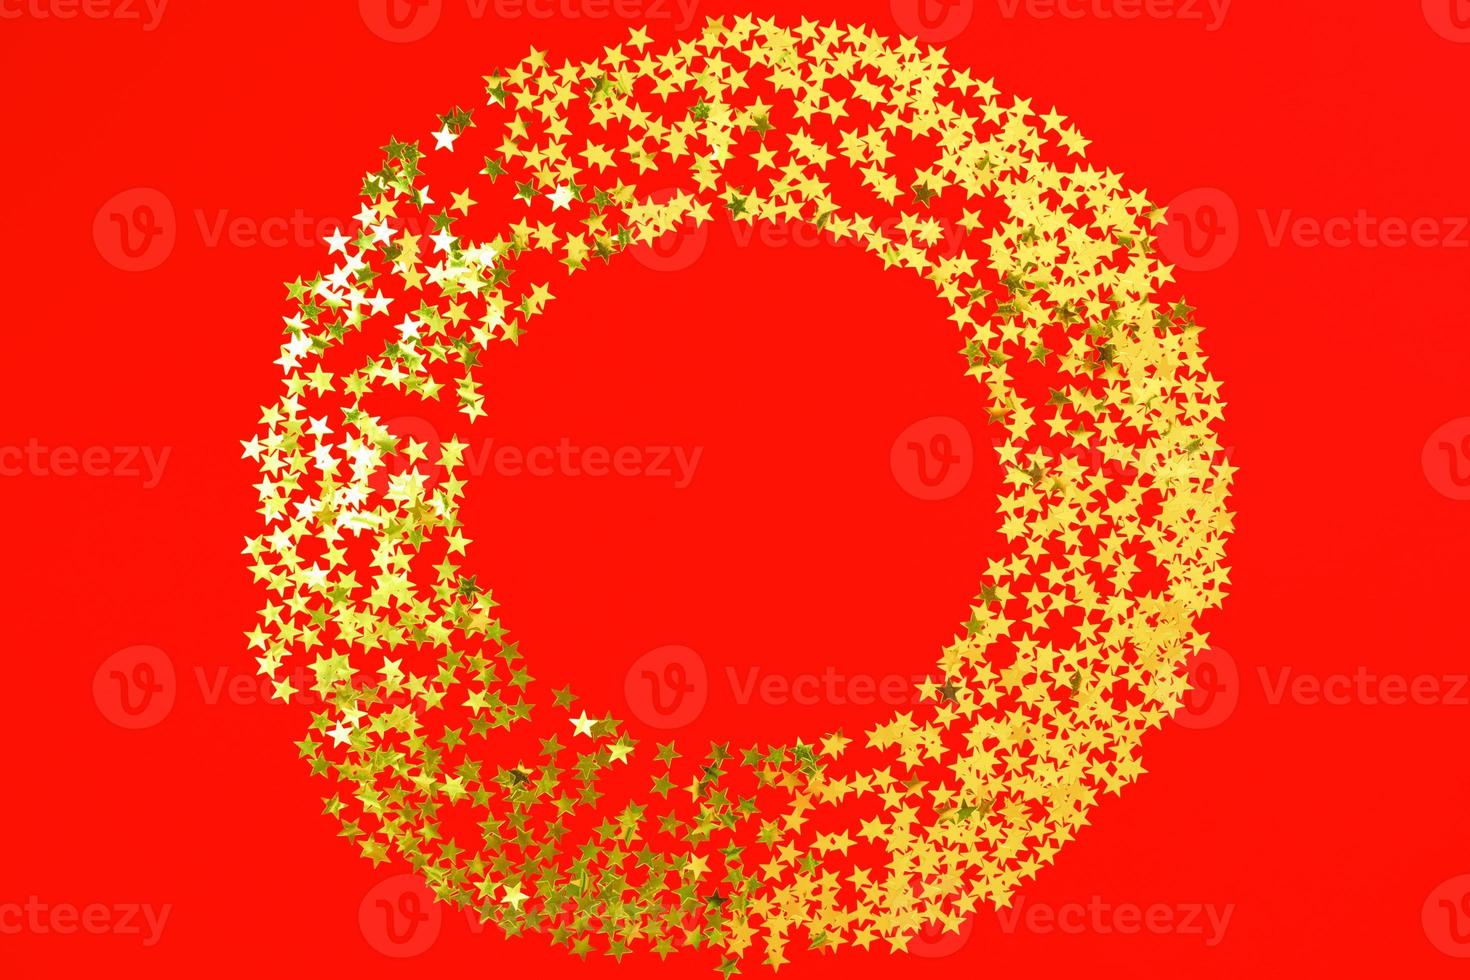 pano de fundo vermelho com glitter e confetes de estrelas douradas em círculo. fundo brilhante de feriado festivo foto